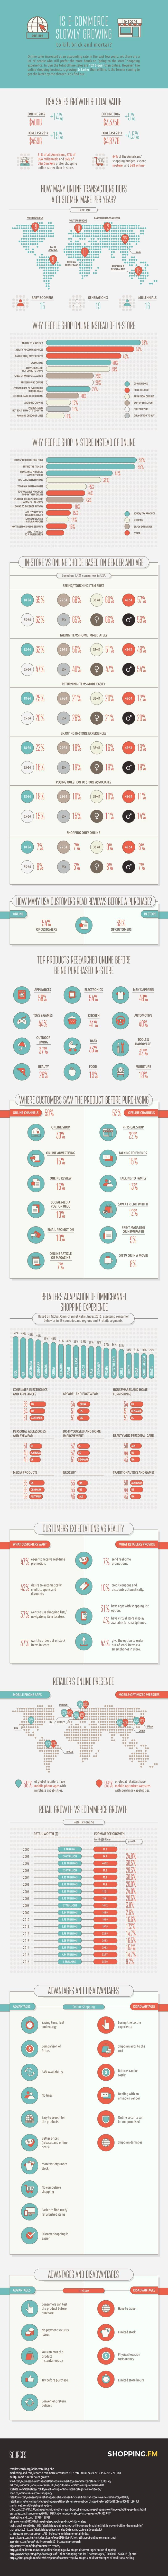 ecommerce infographic